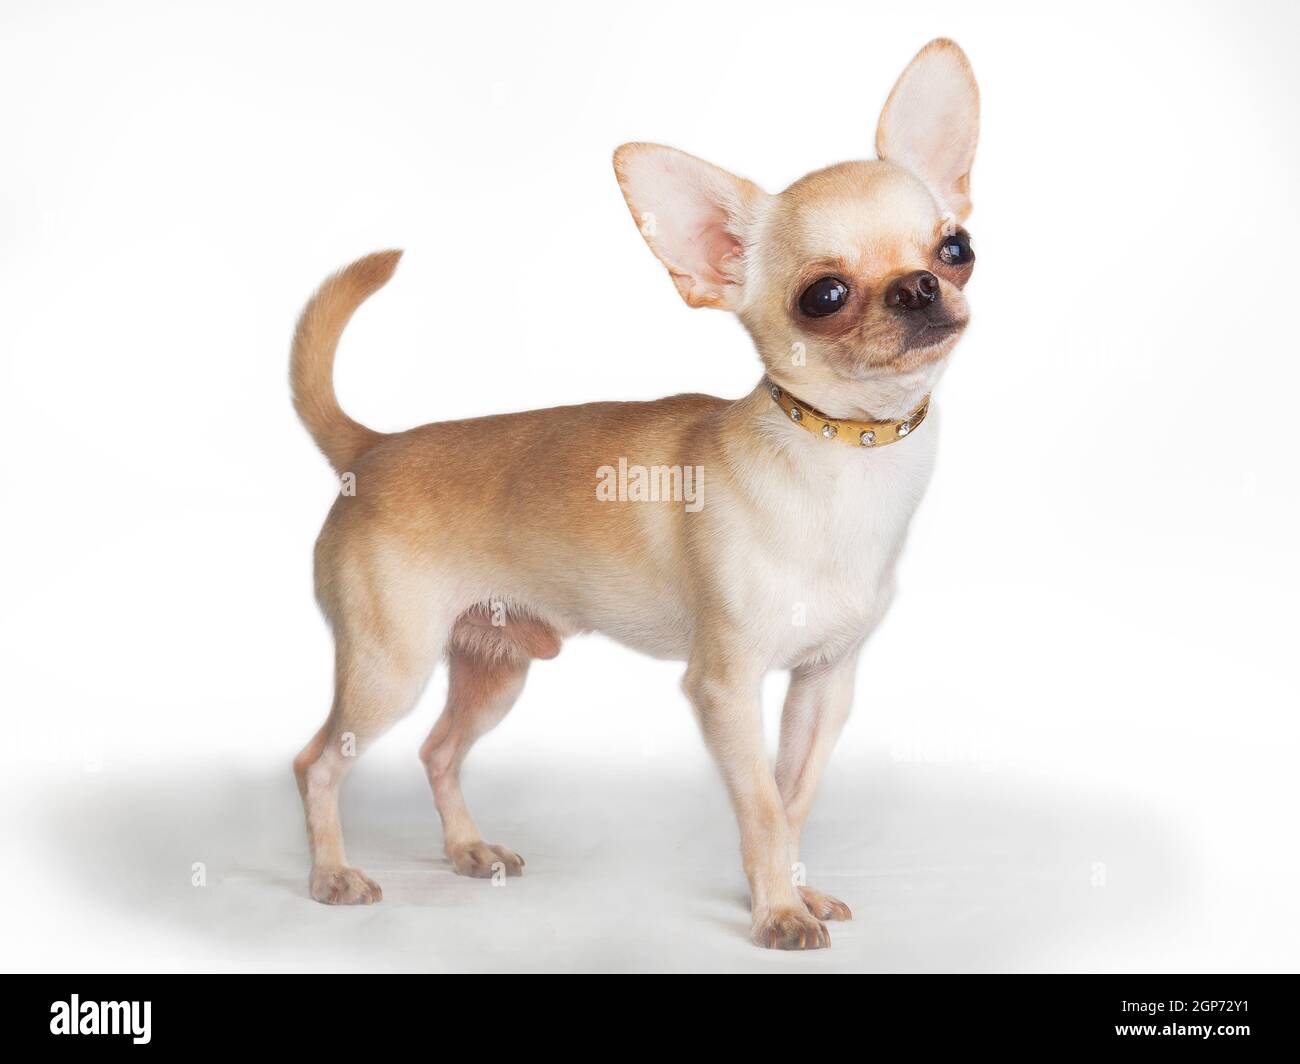 Der kleine chihuahua Hund (Rüde) mit weißen Steinen im Halsband steht stolz  auf weißem Hintergrund im Studio Stockfotografie - Alamy